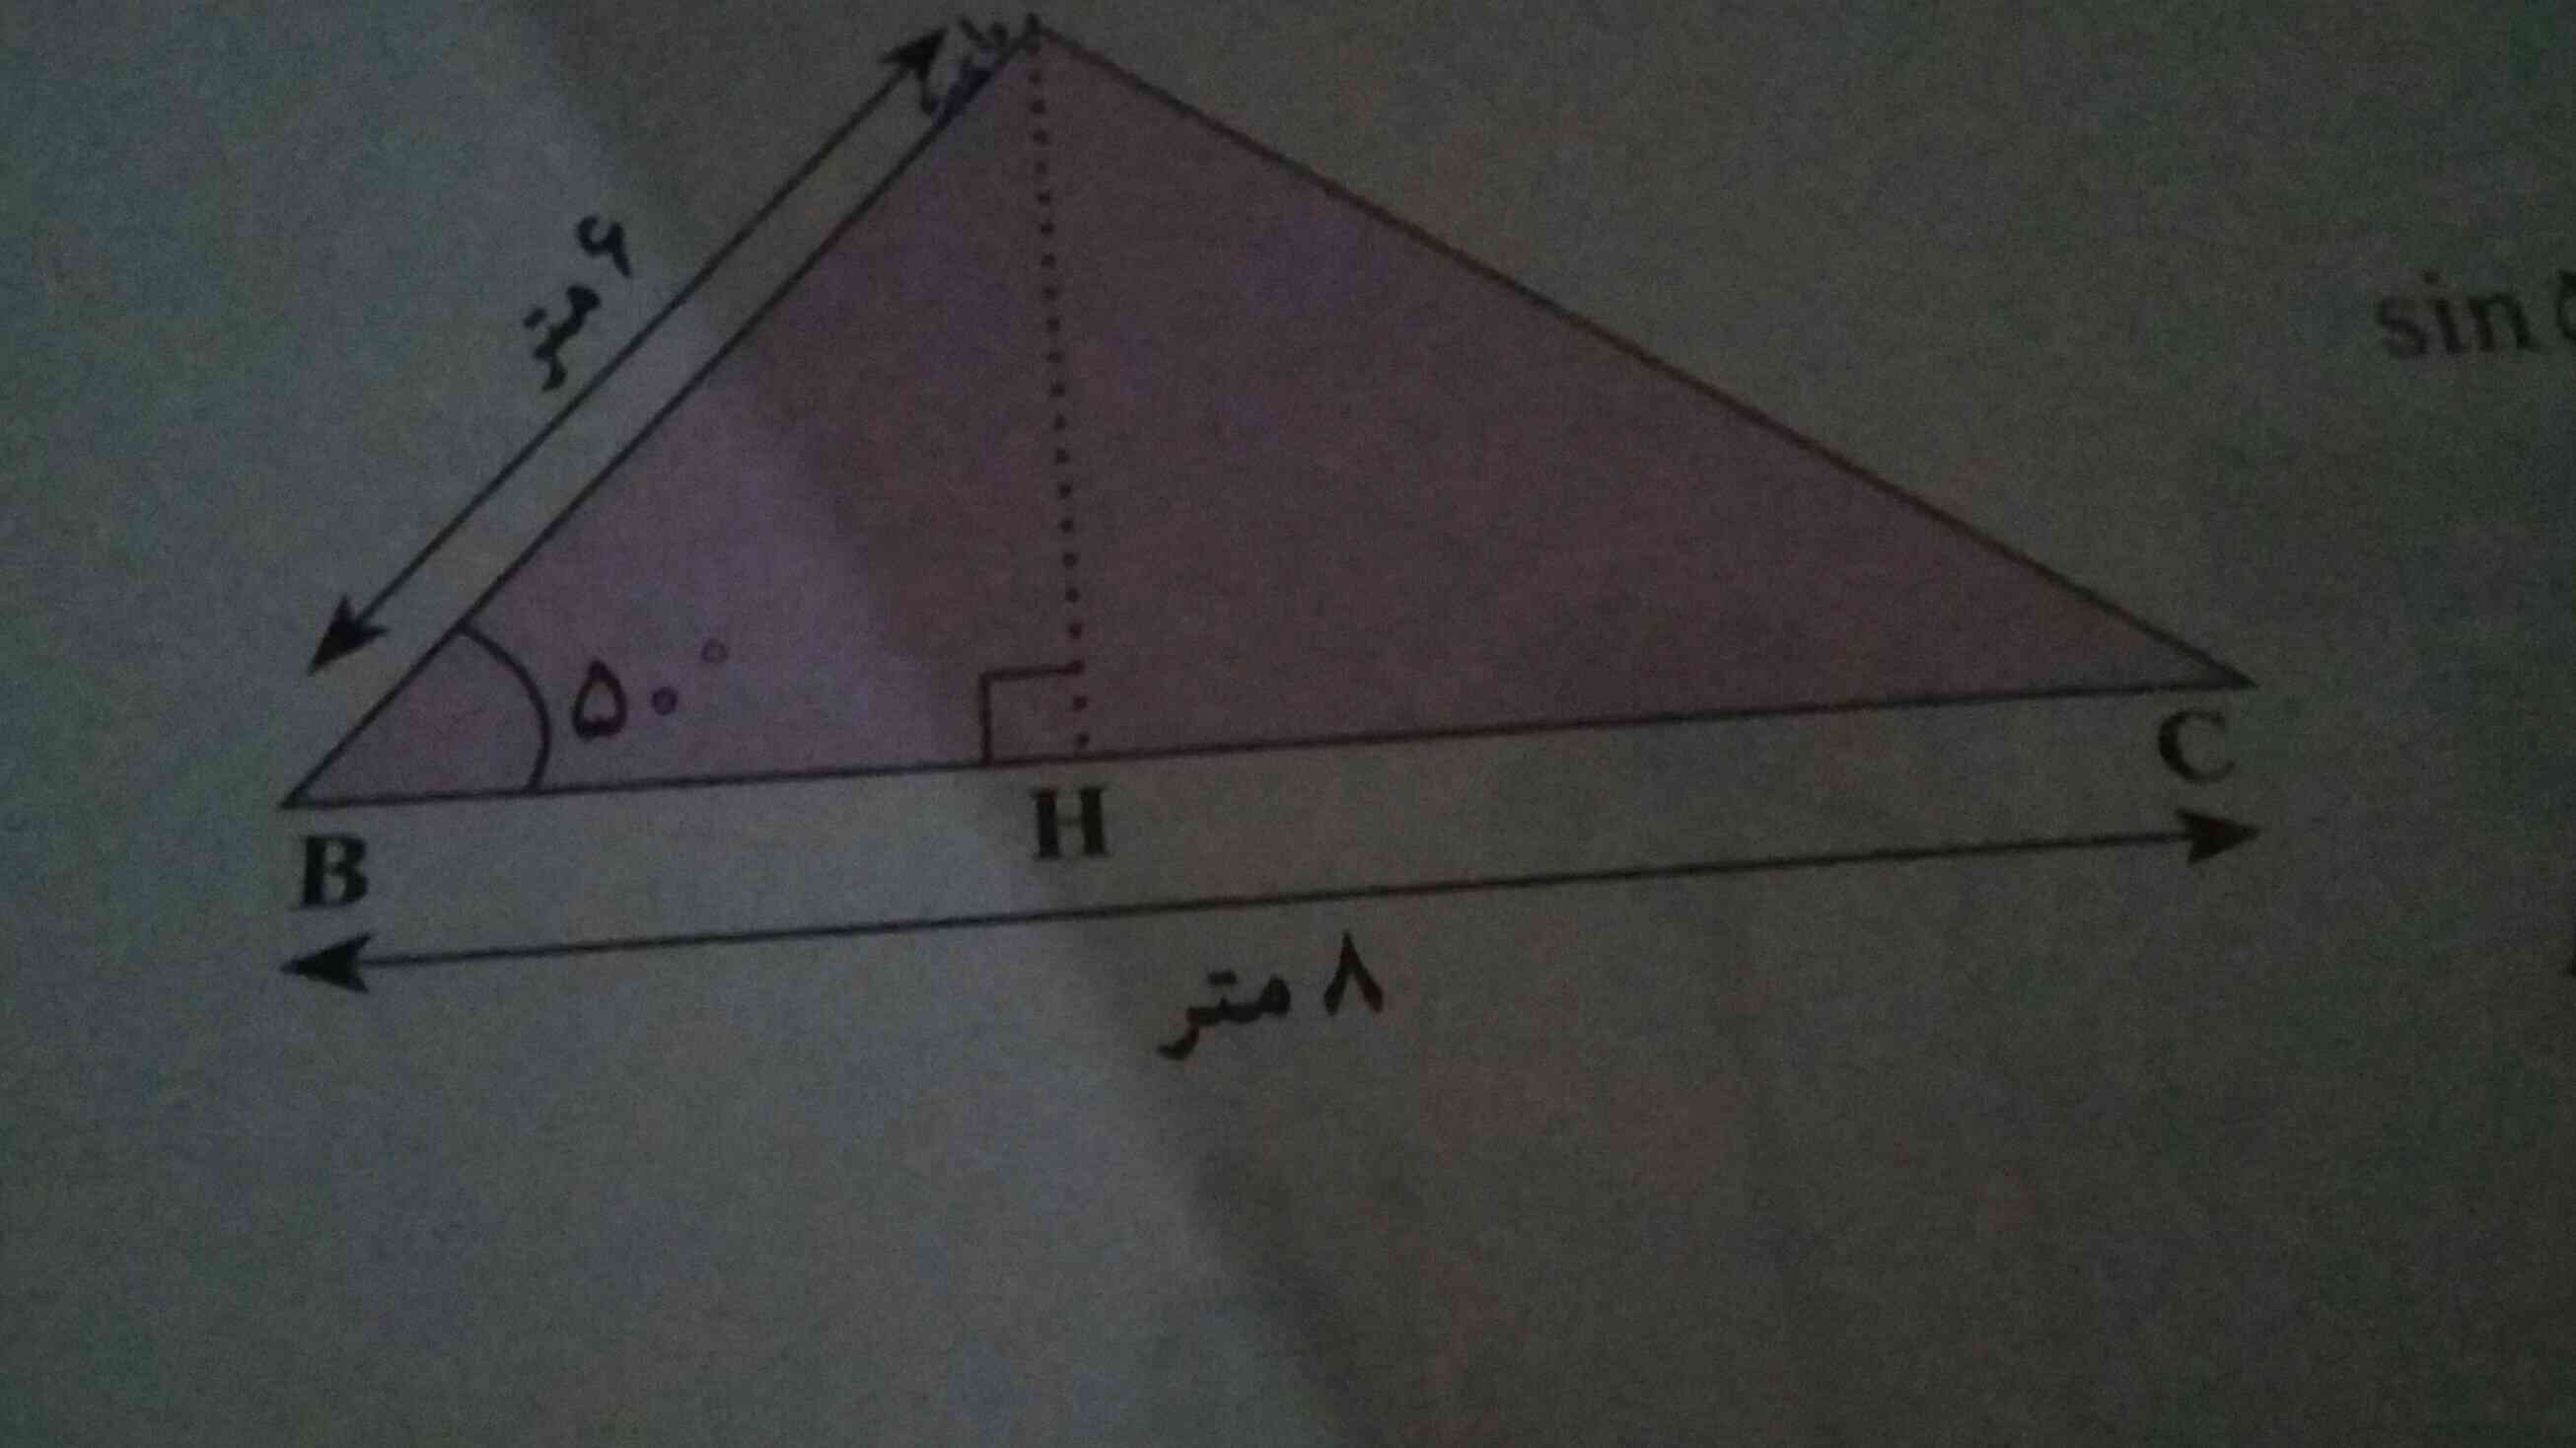 چجوری مساحت این مثلثو حساب کنم